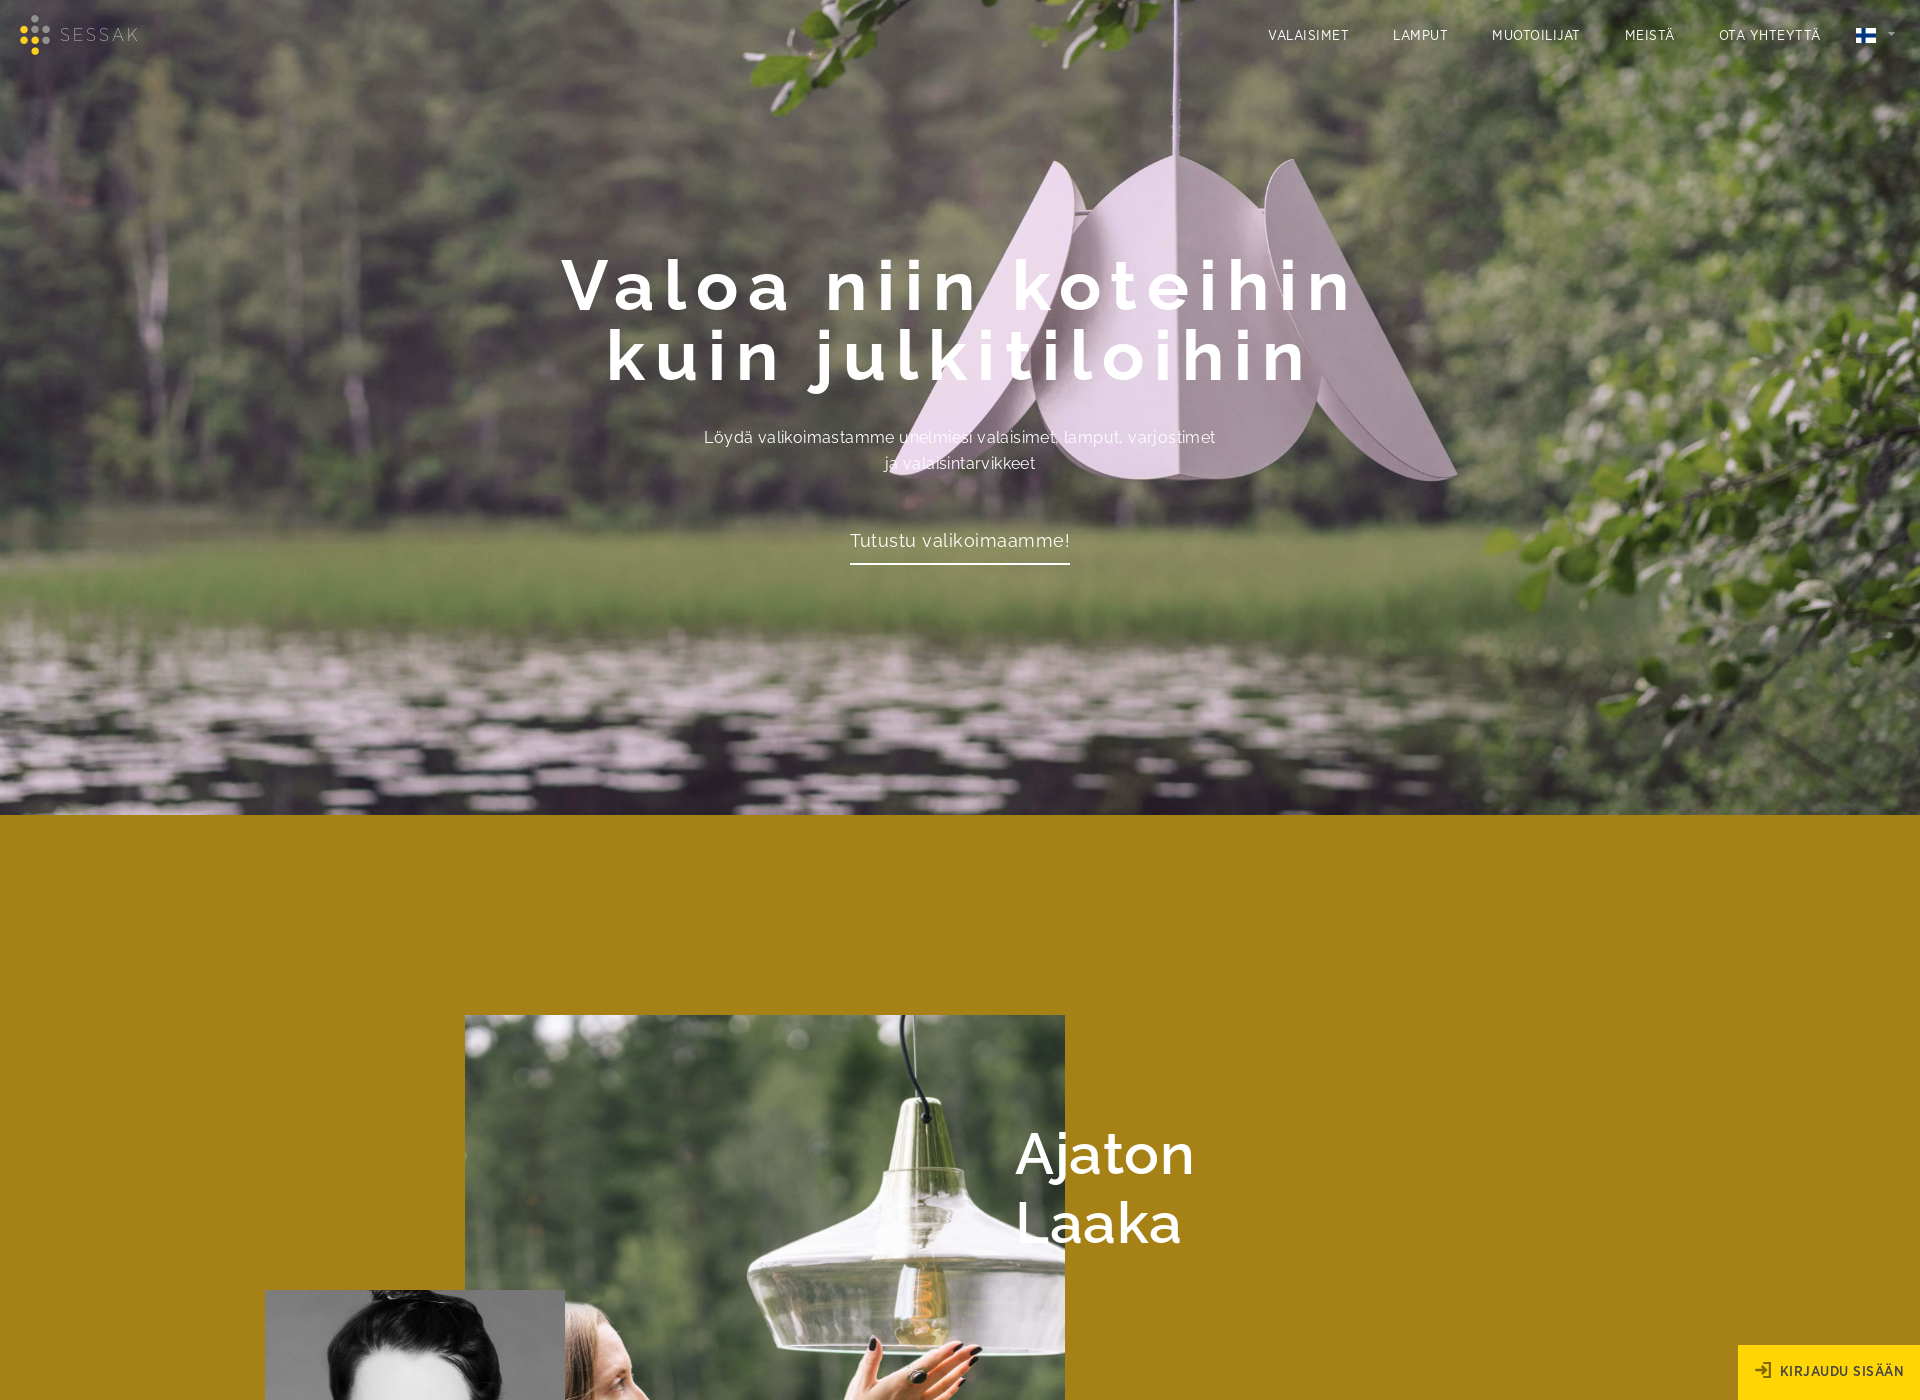 Näyttökuva sessak.fi